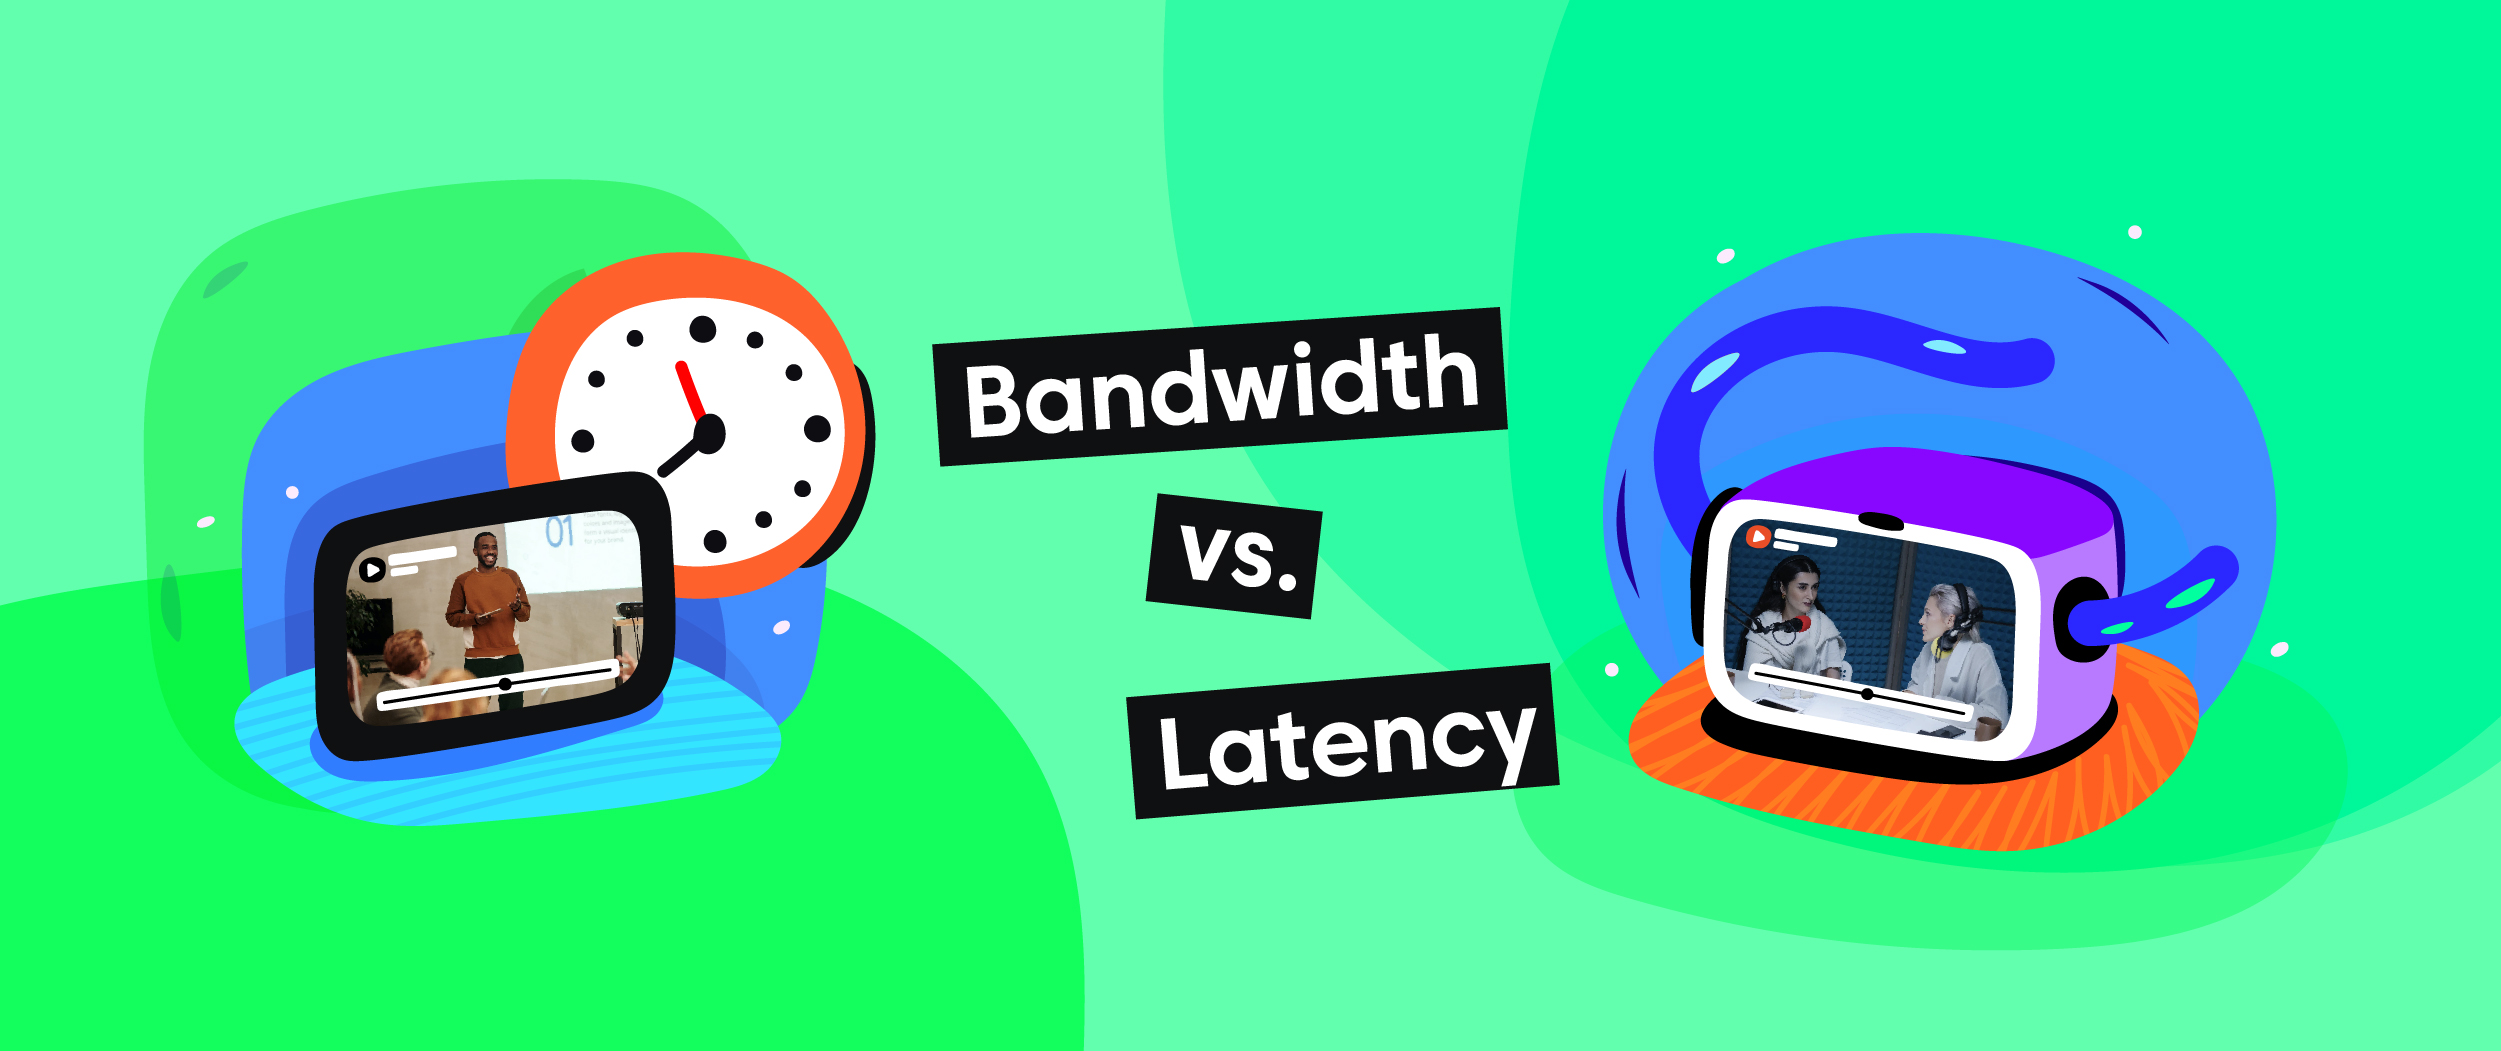 Bandwidth vs Latency